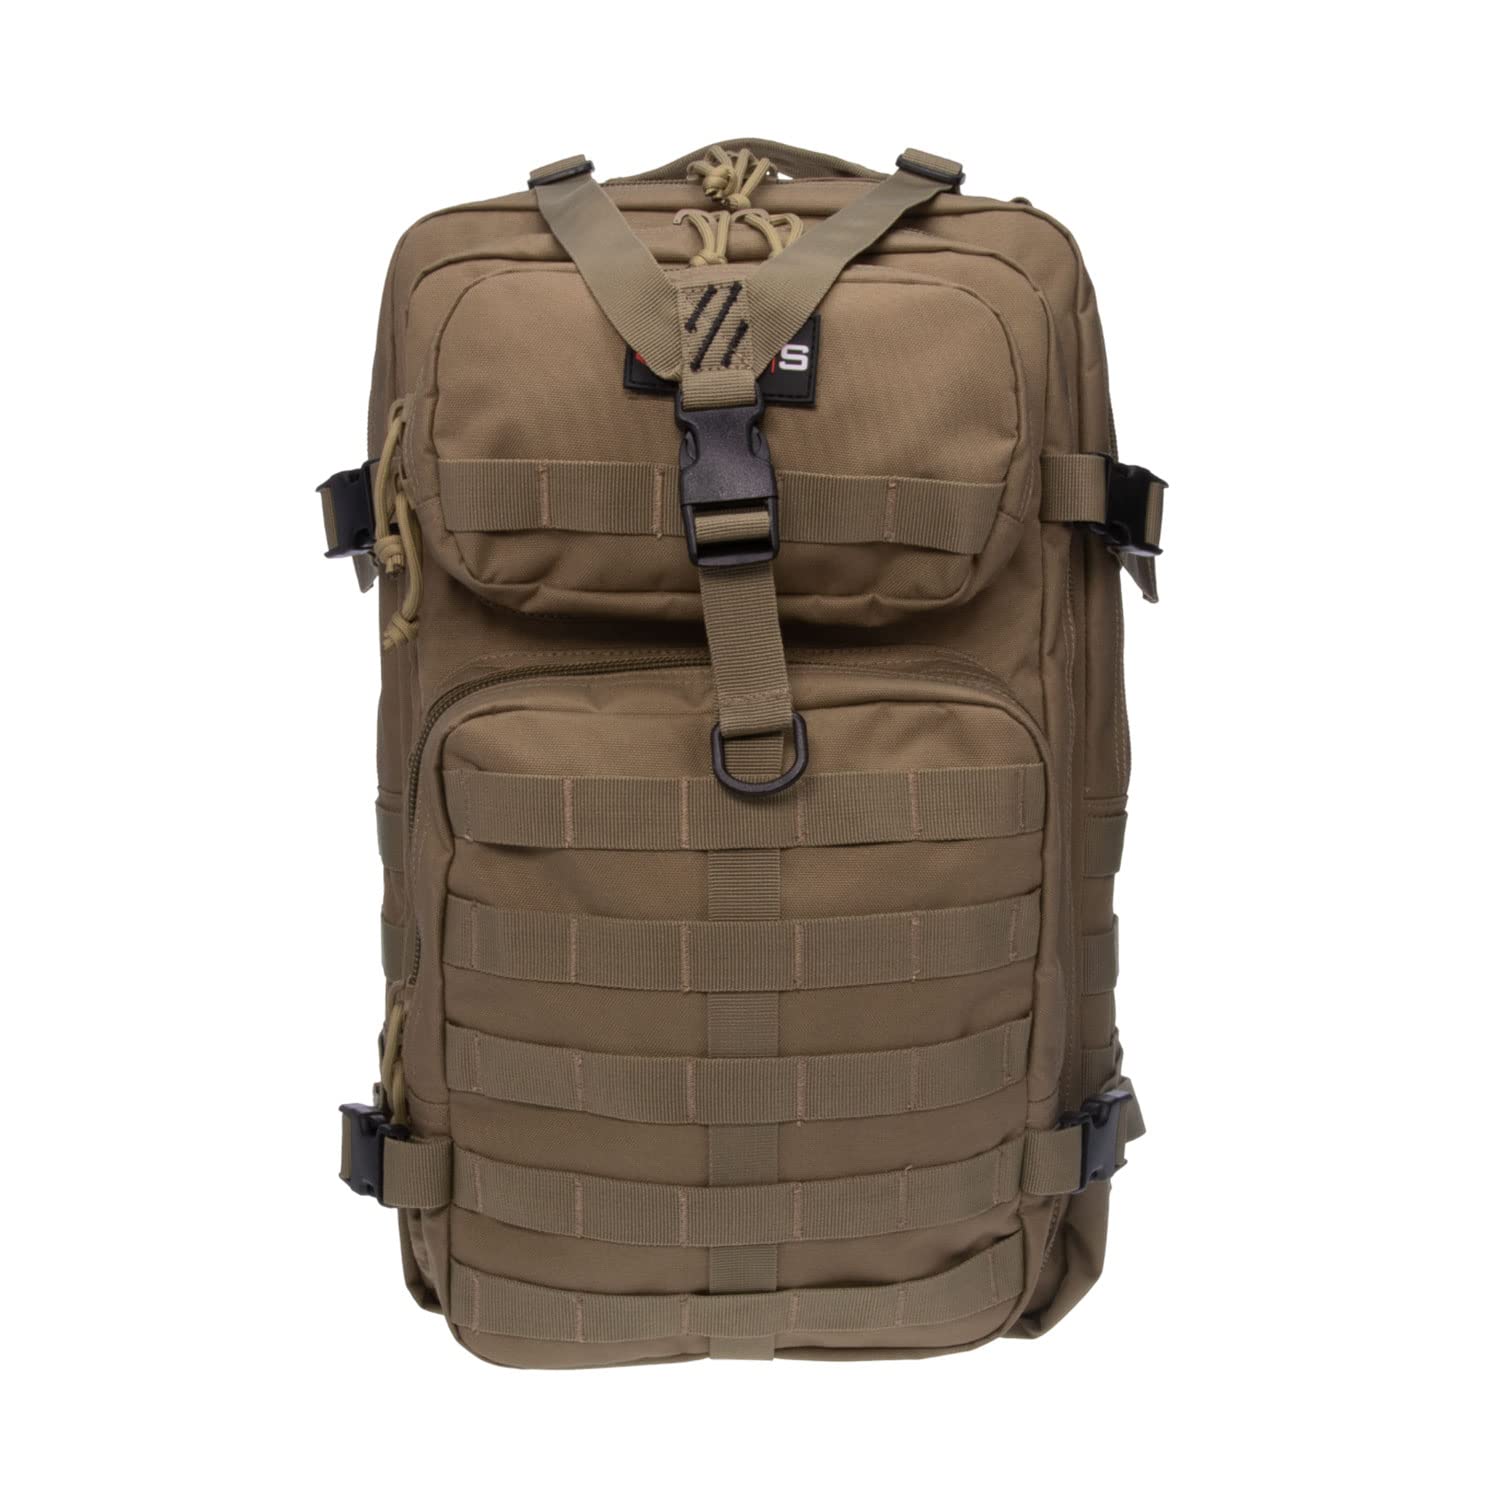 送料無料G. Outdoor Products Tactical Bugout Durable Weatherproof Water-Resistant Computer Backpack with 2 Removable Pisto